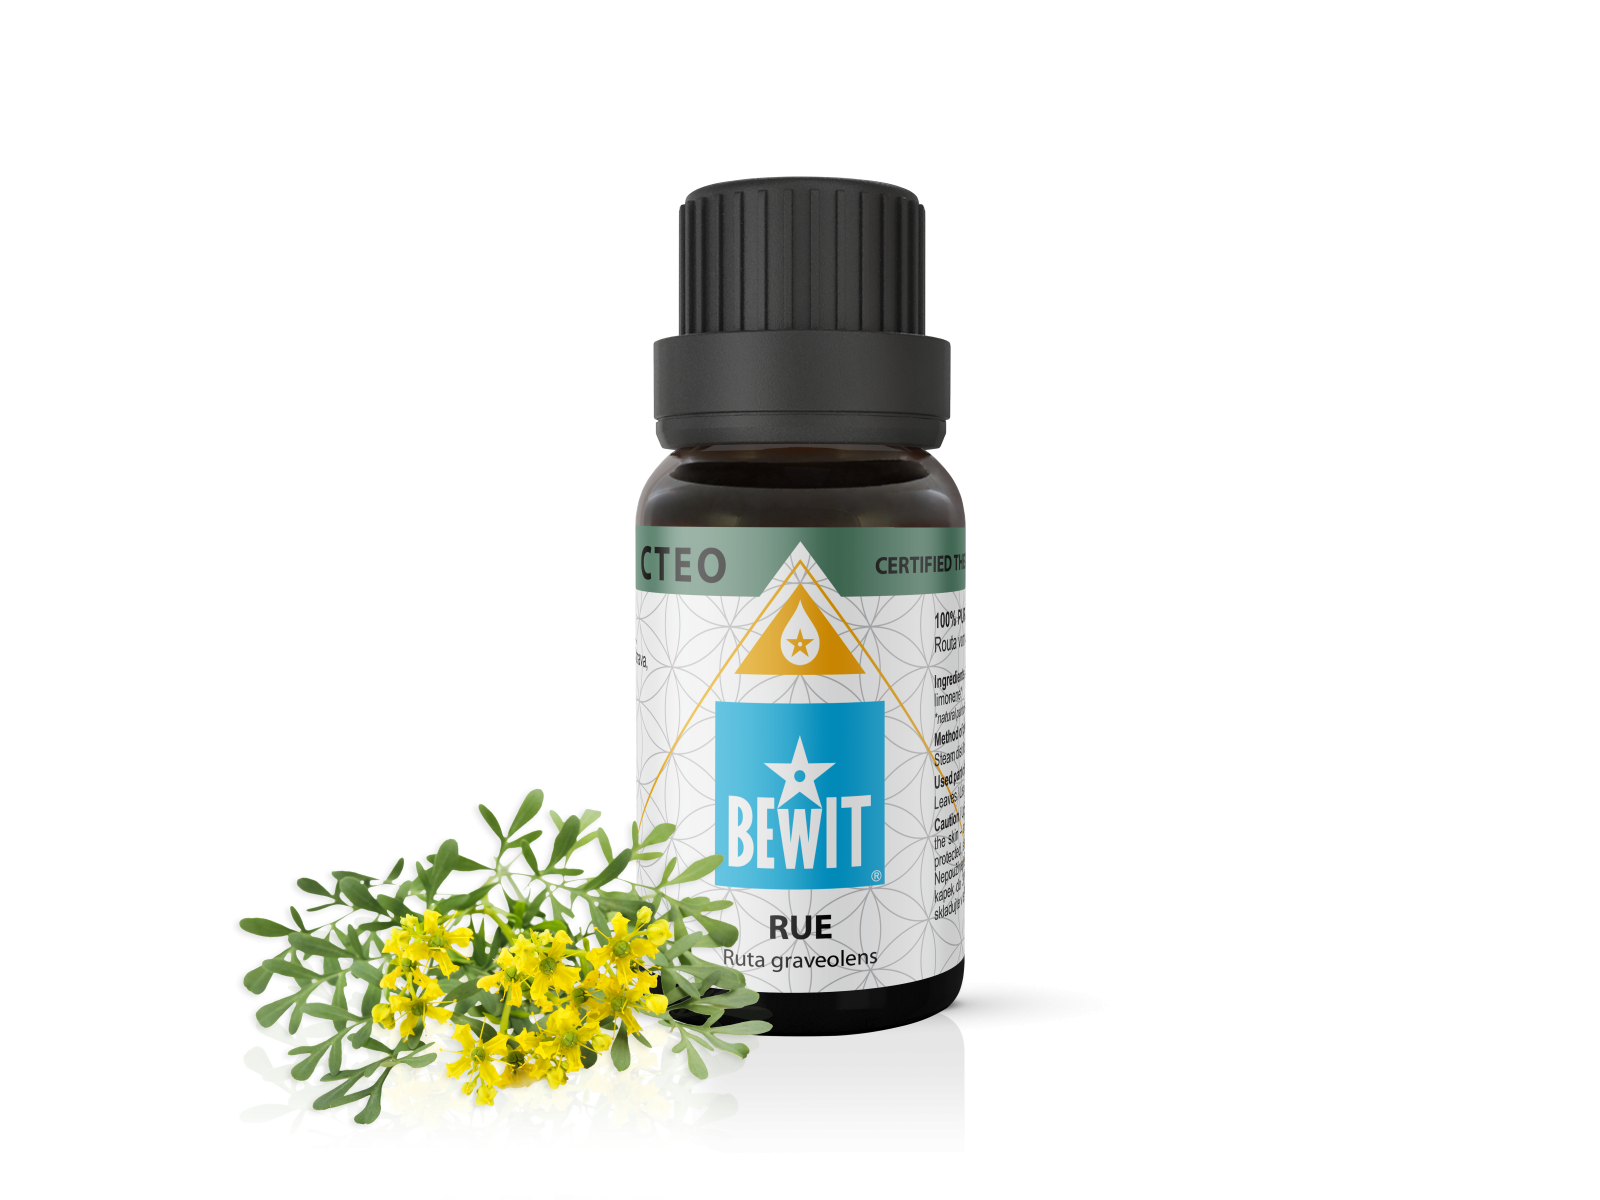 BEWIT Rue - 100% pure essential oil - 1